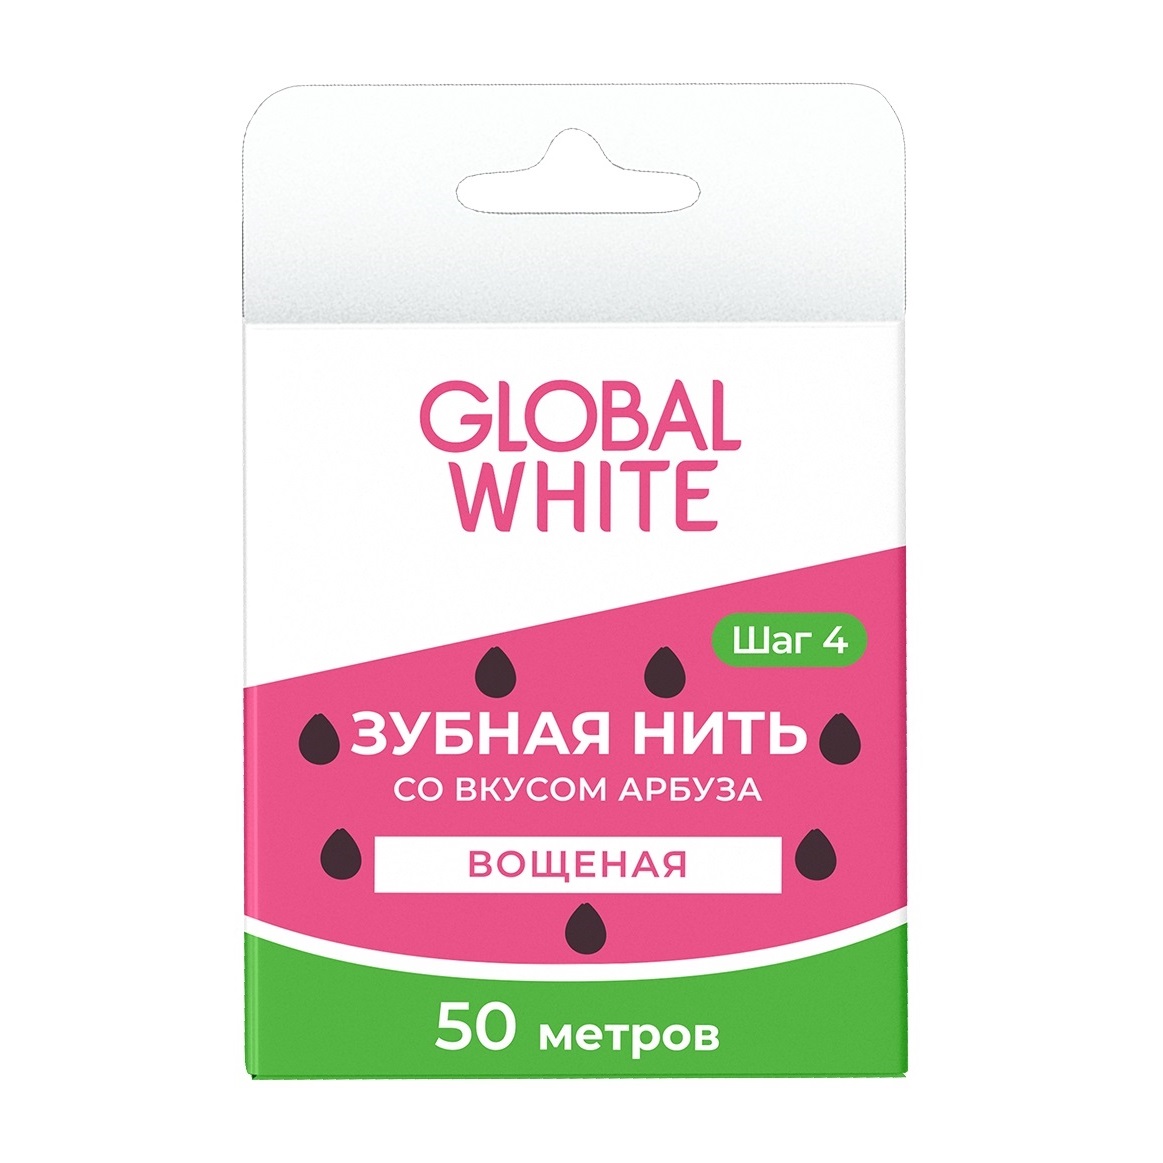 Купить Global White з/нить 50м со вкусом арбуза